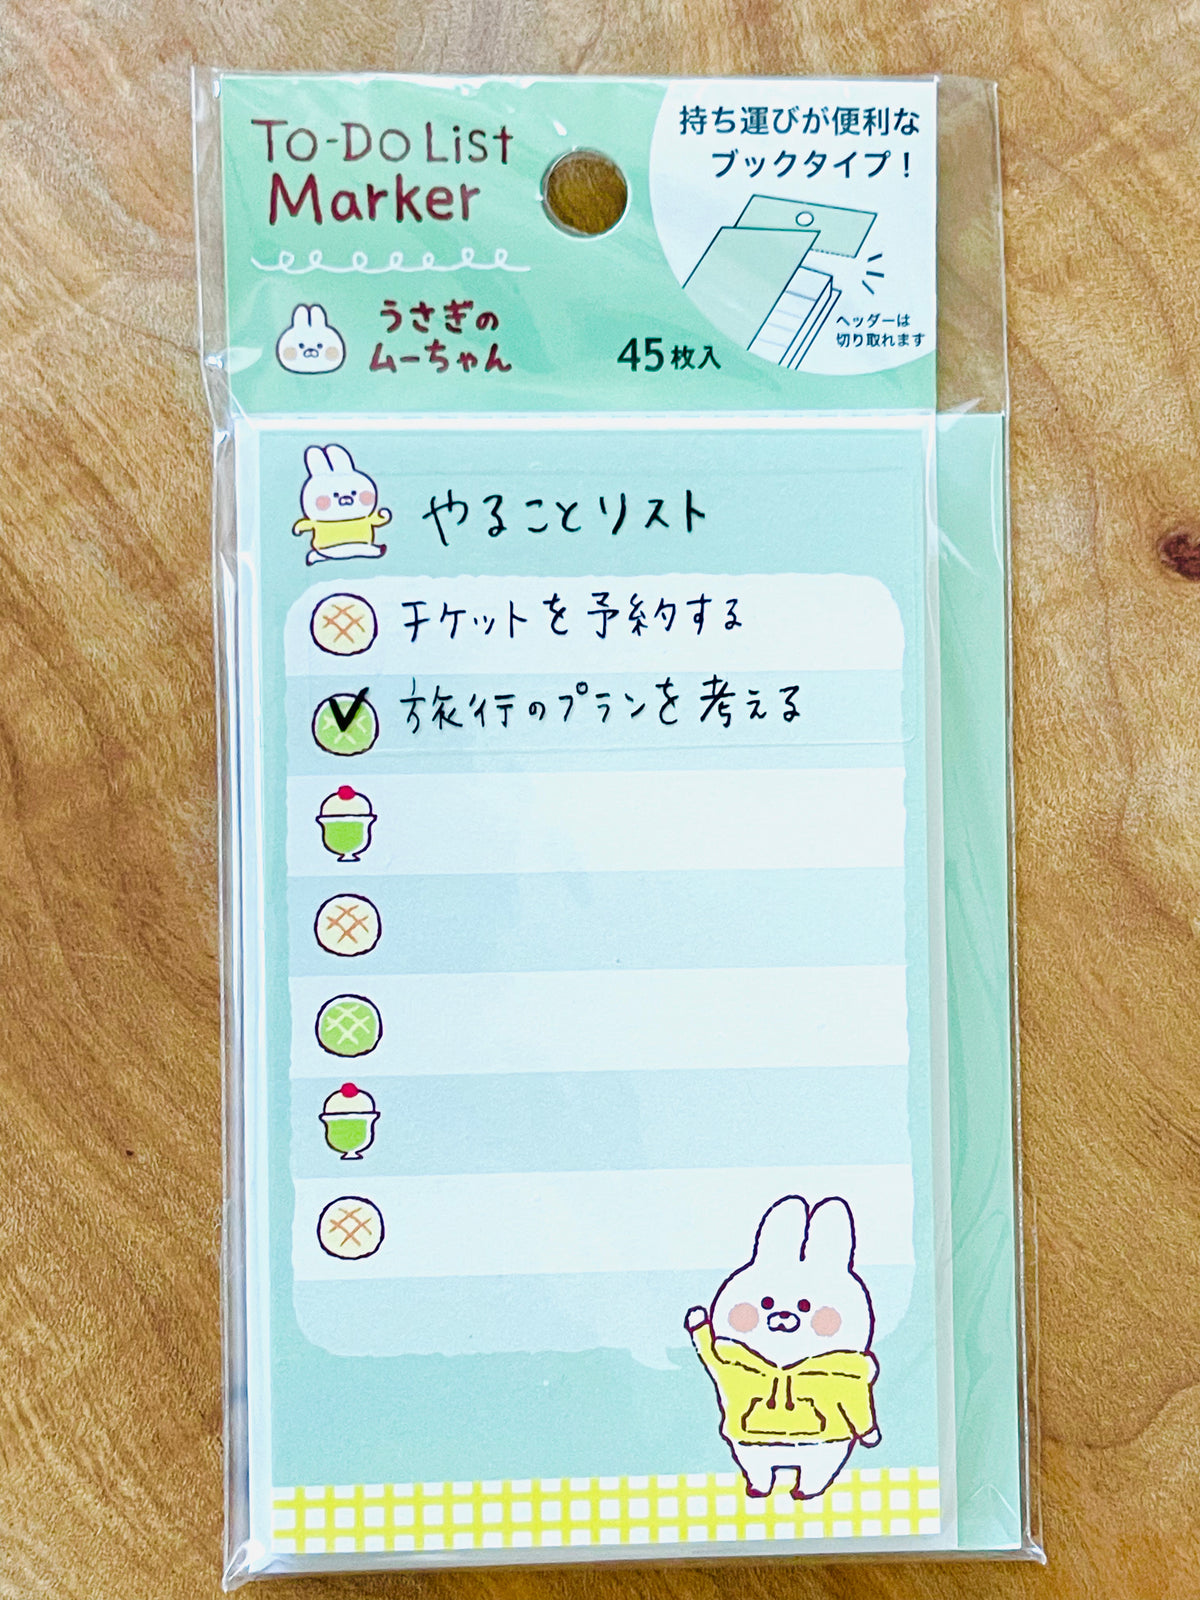 To-Do List: with Muu-chan Bunny